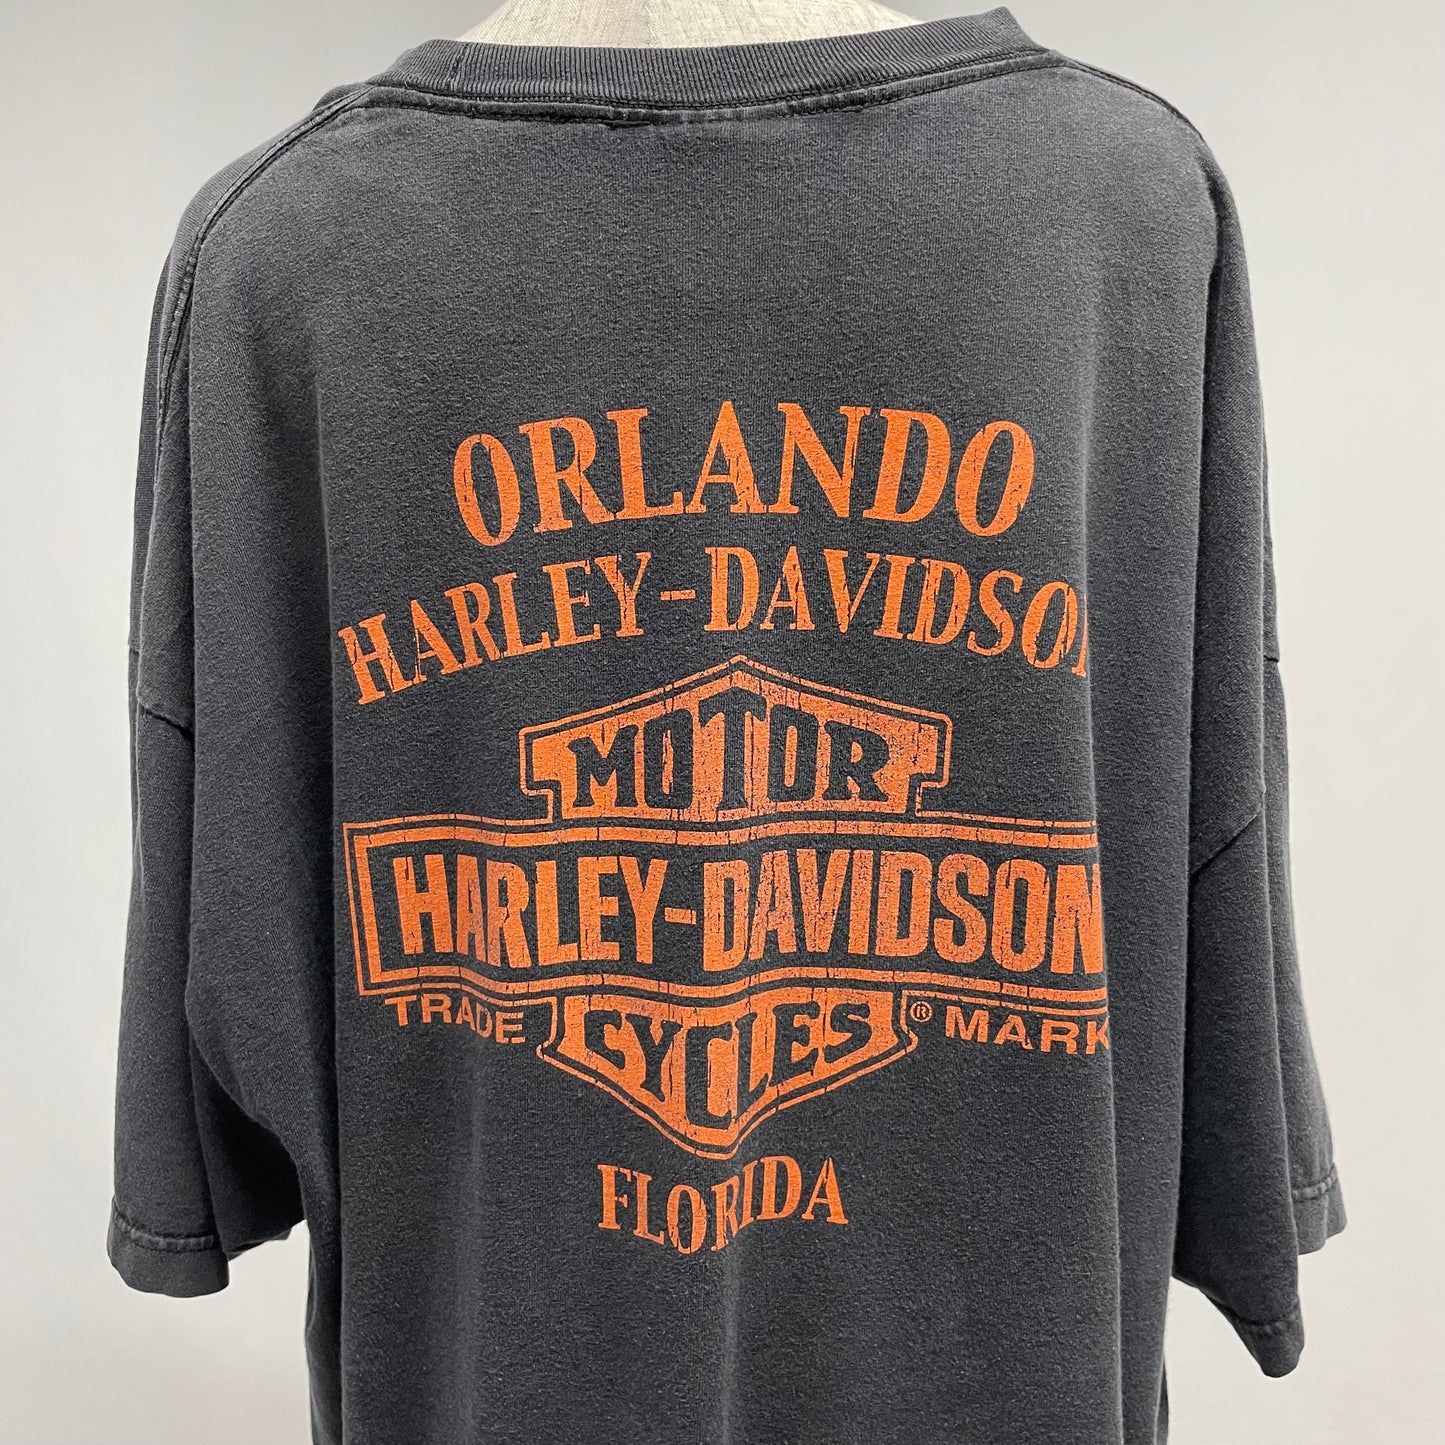 00's "Harley Davidson" pin-up girl print t-shirt